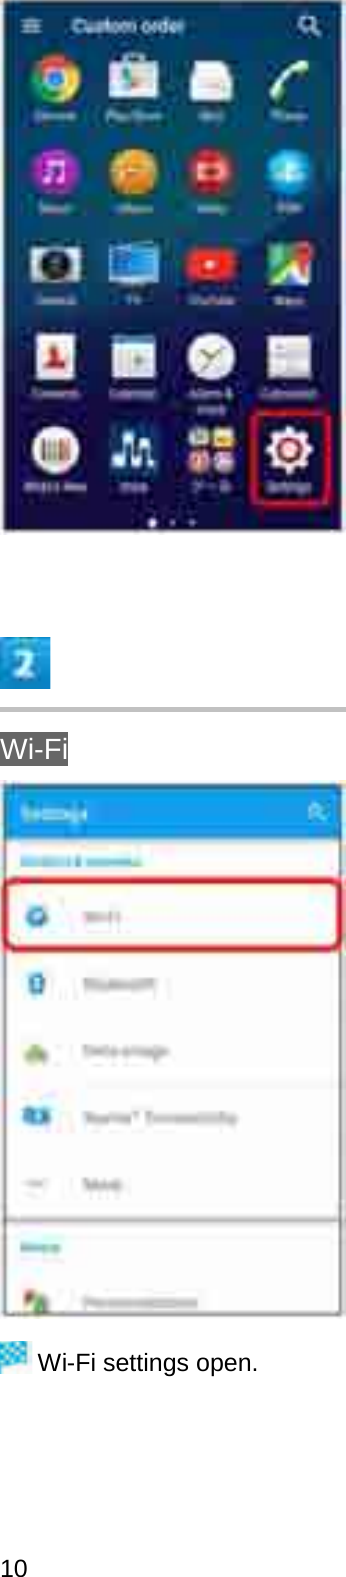 Wi-FiWi-Fi settings open.10